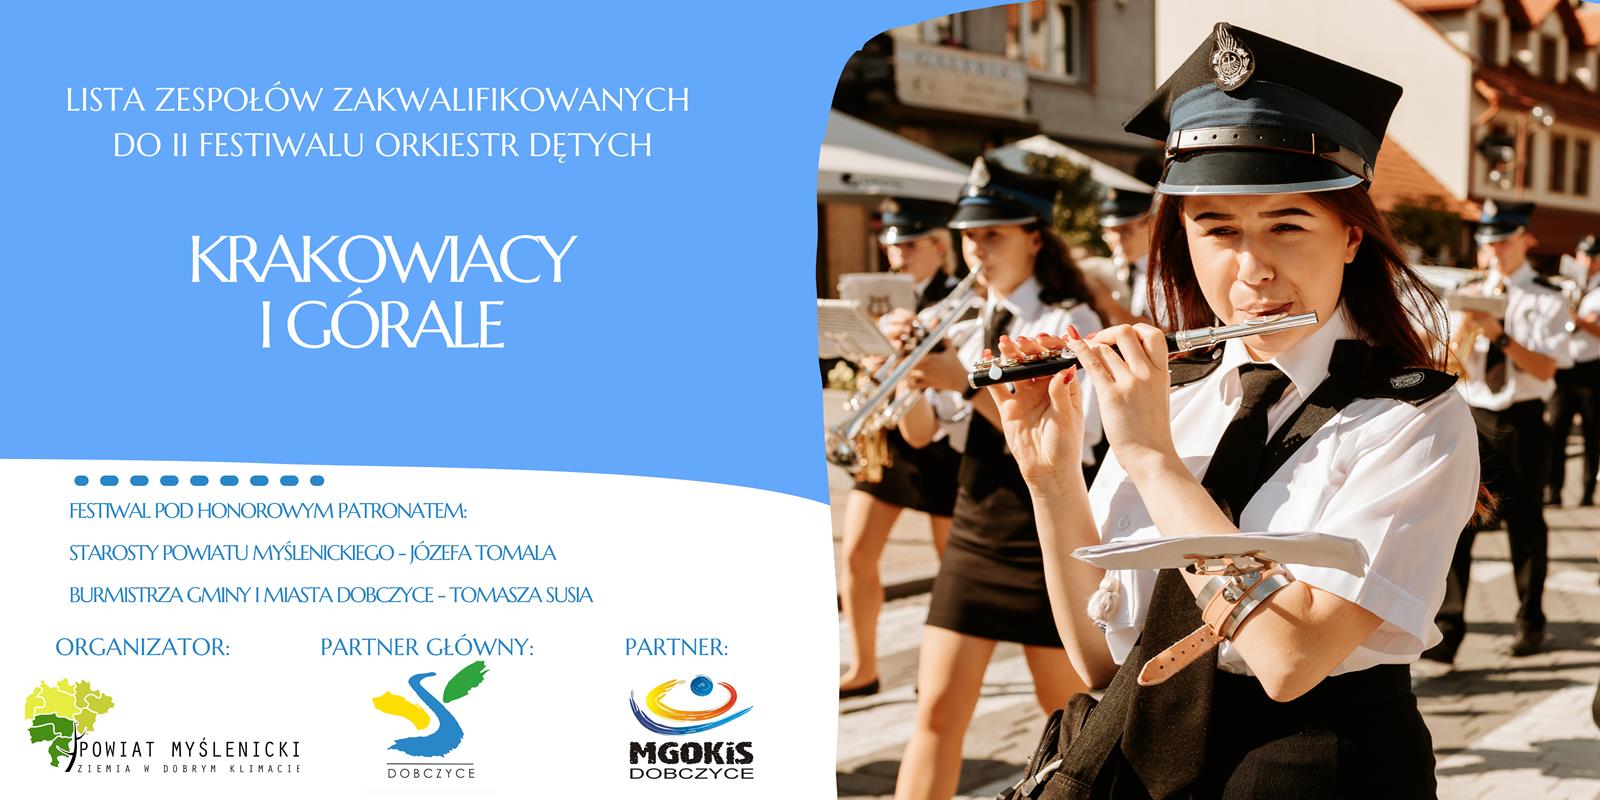 Znamy orkiestry zakwalifikowane do II Festiwalu Orkiestr Dętych Krakowiacy i Górale